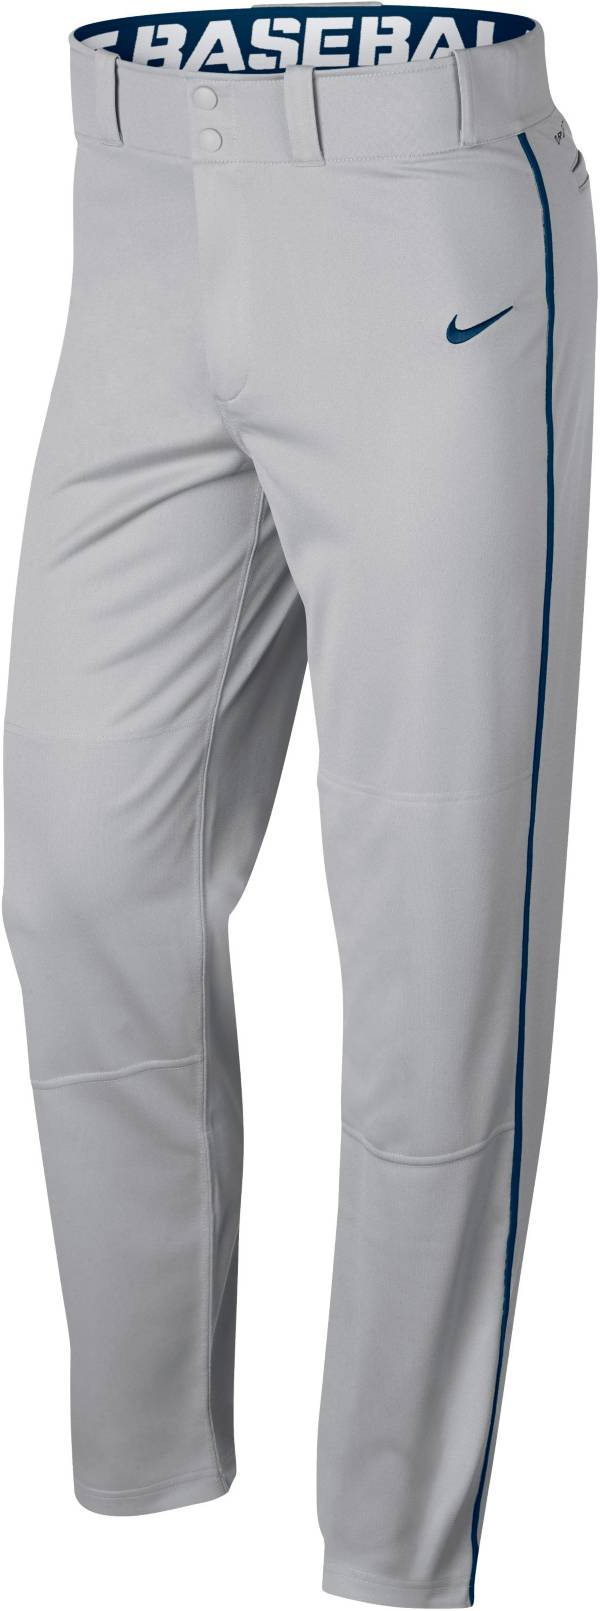 Nike Men's Swoosh Piped Baseball Pants | Dick's Sporting Goods